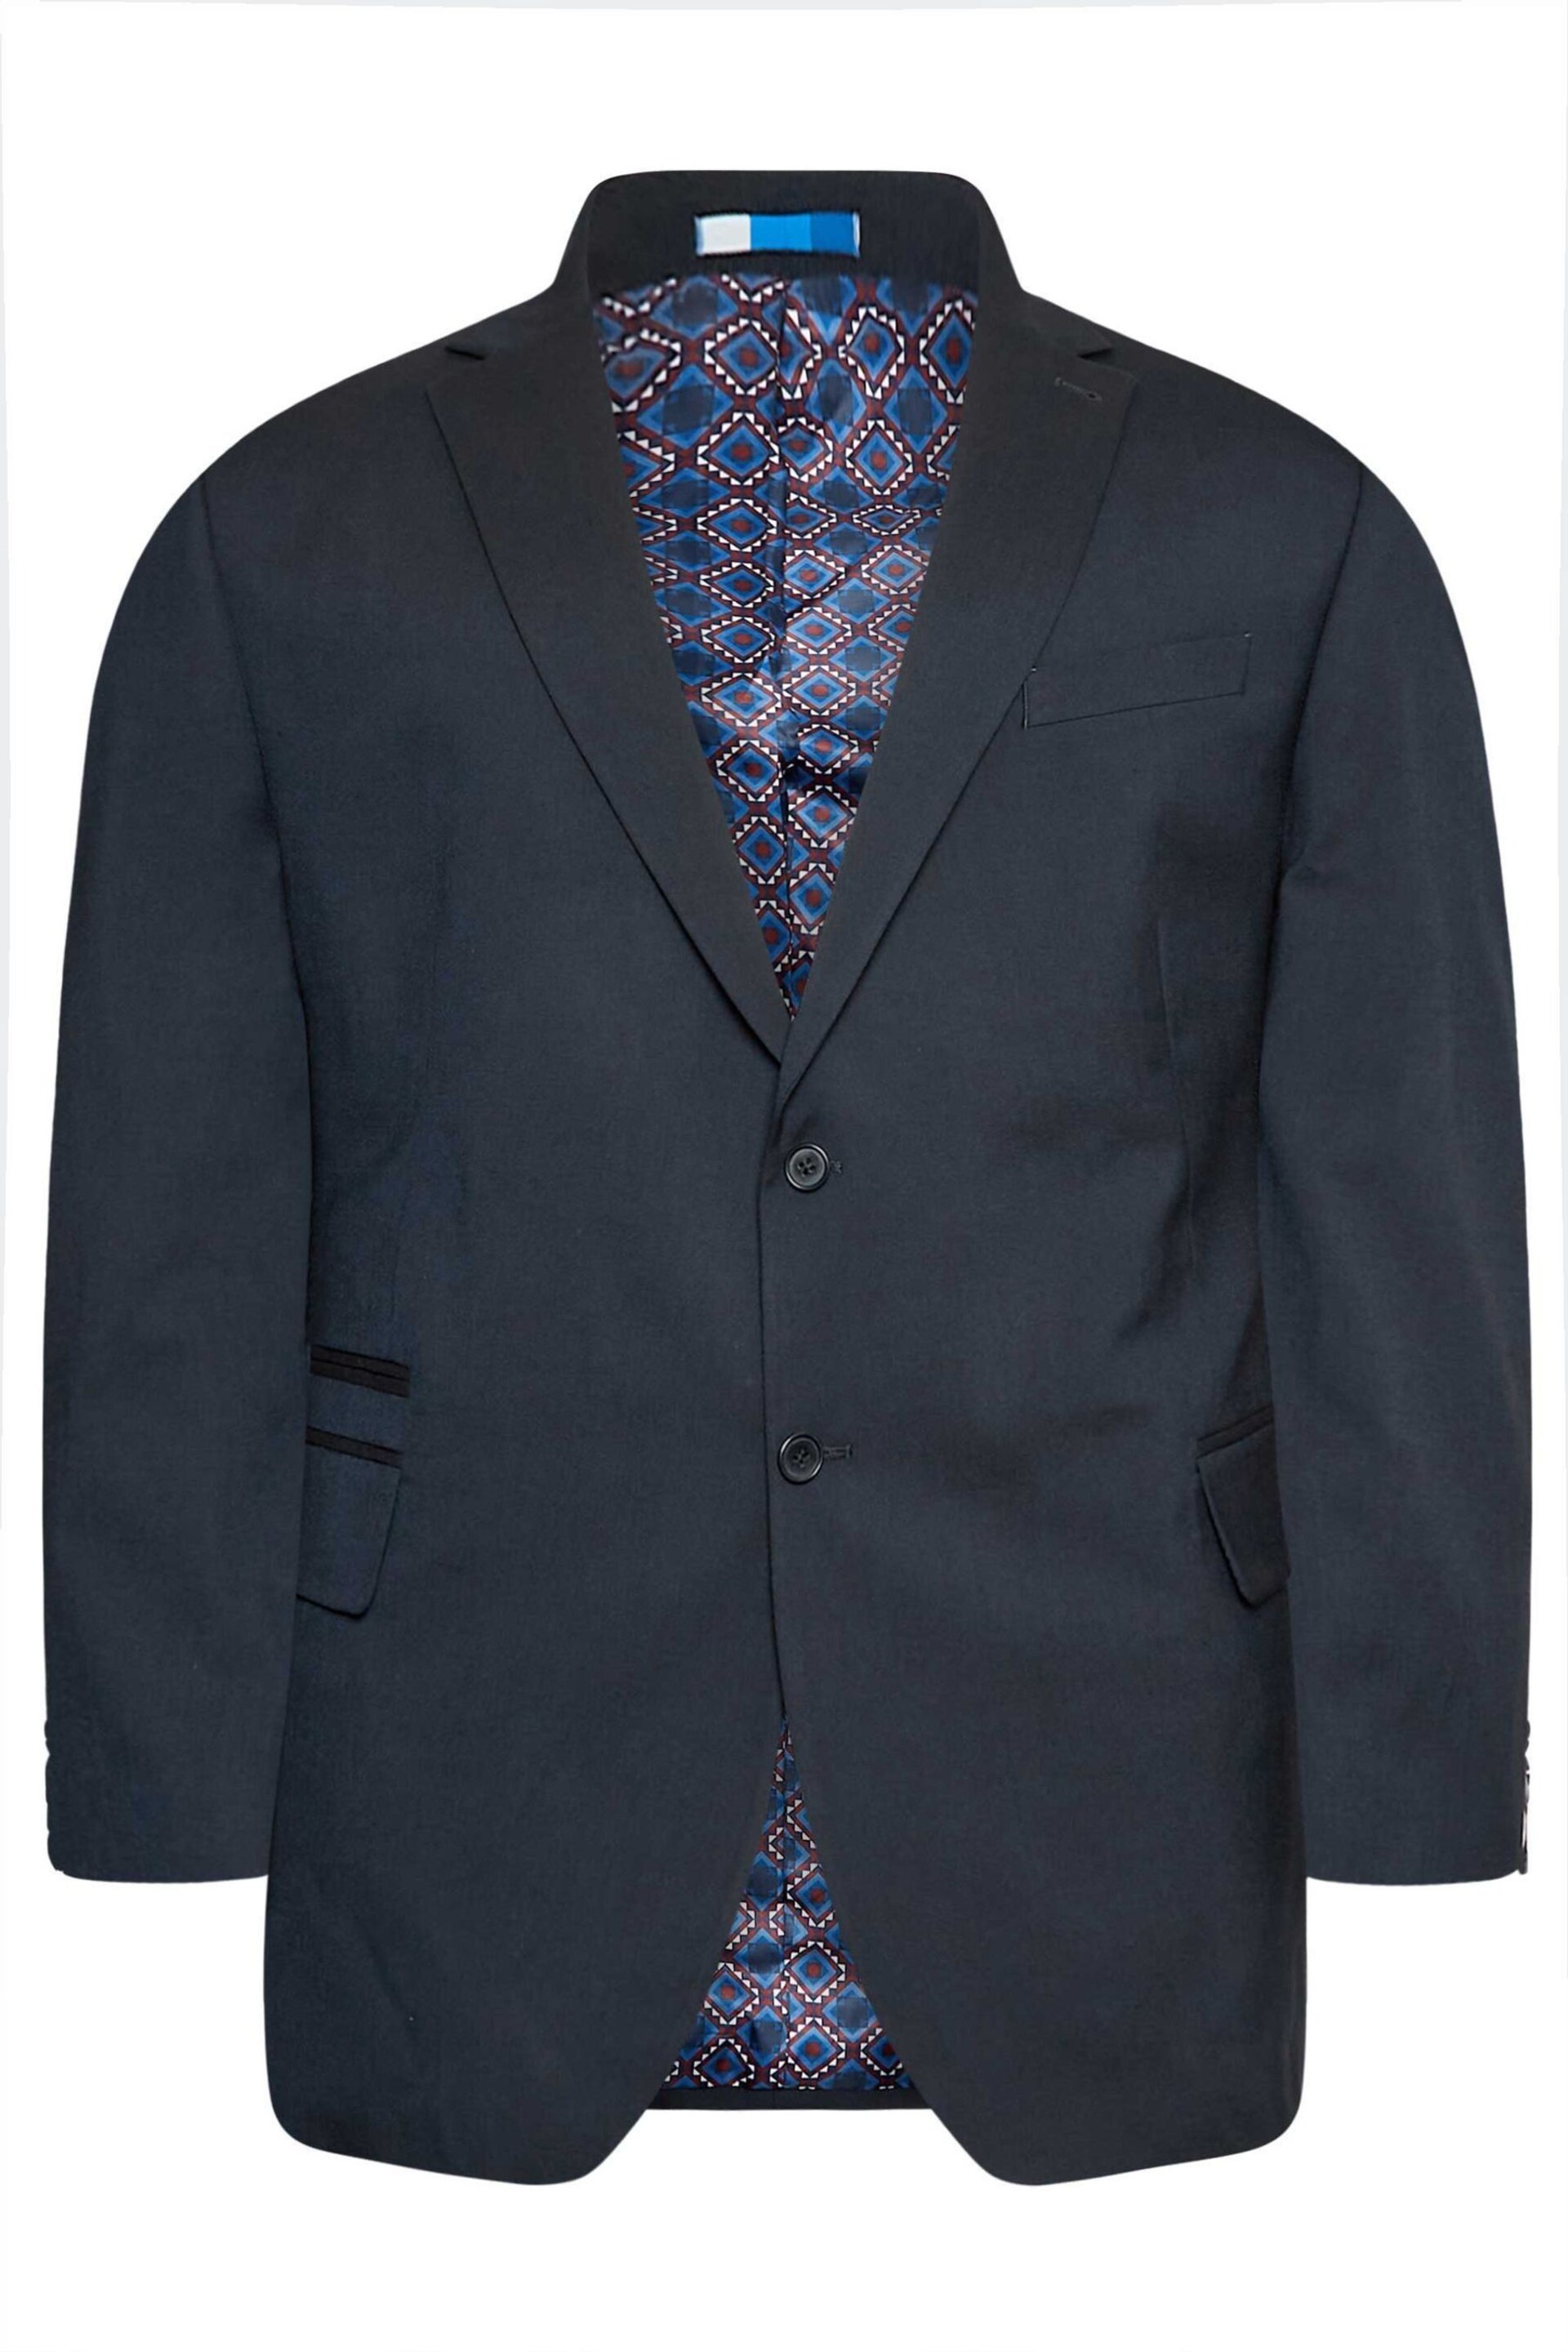 BadRhino Big & Tall Blue Plain Suit Jacket - Image 4 of 5